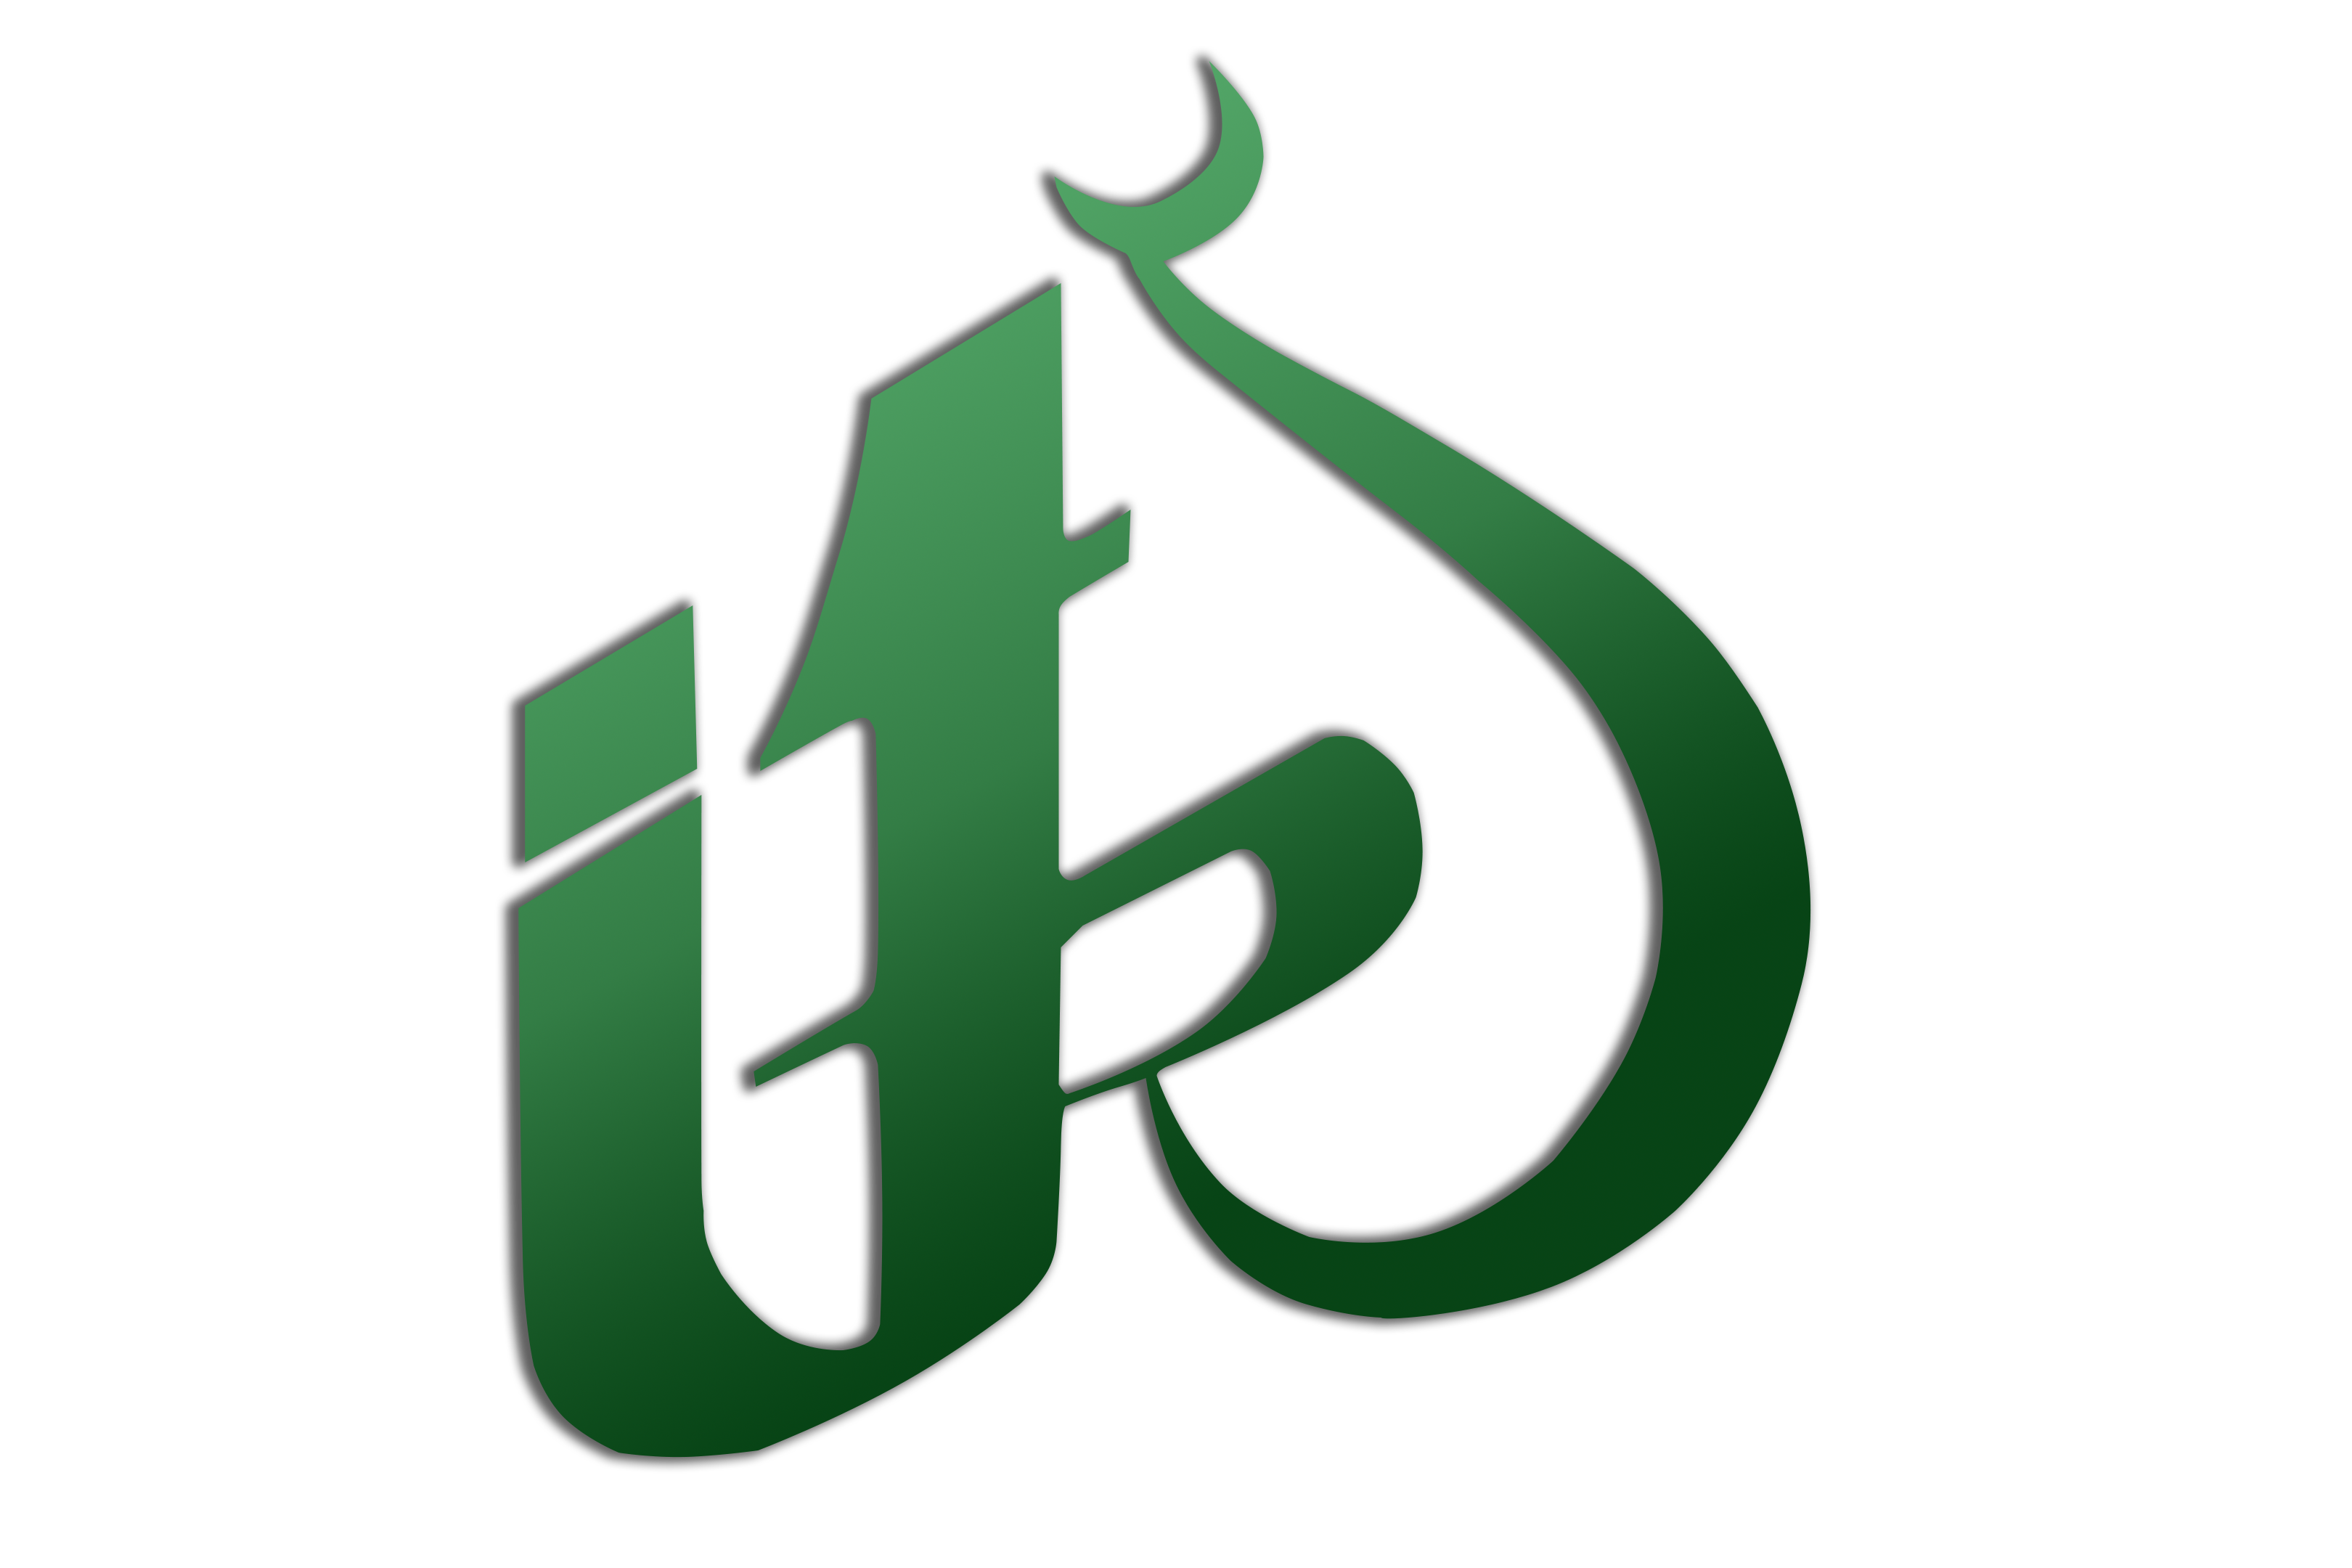 islam-tr logo vektörel 2.png